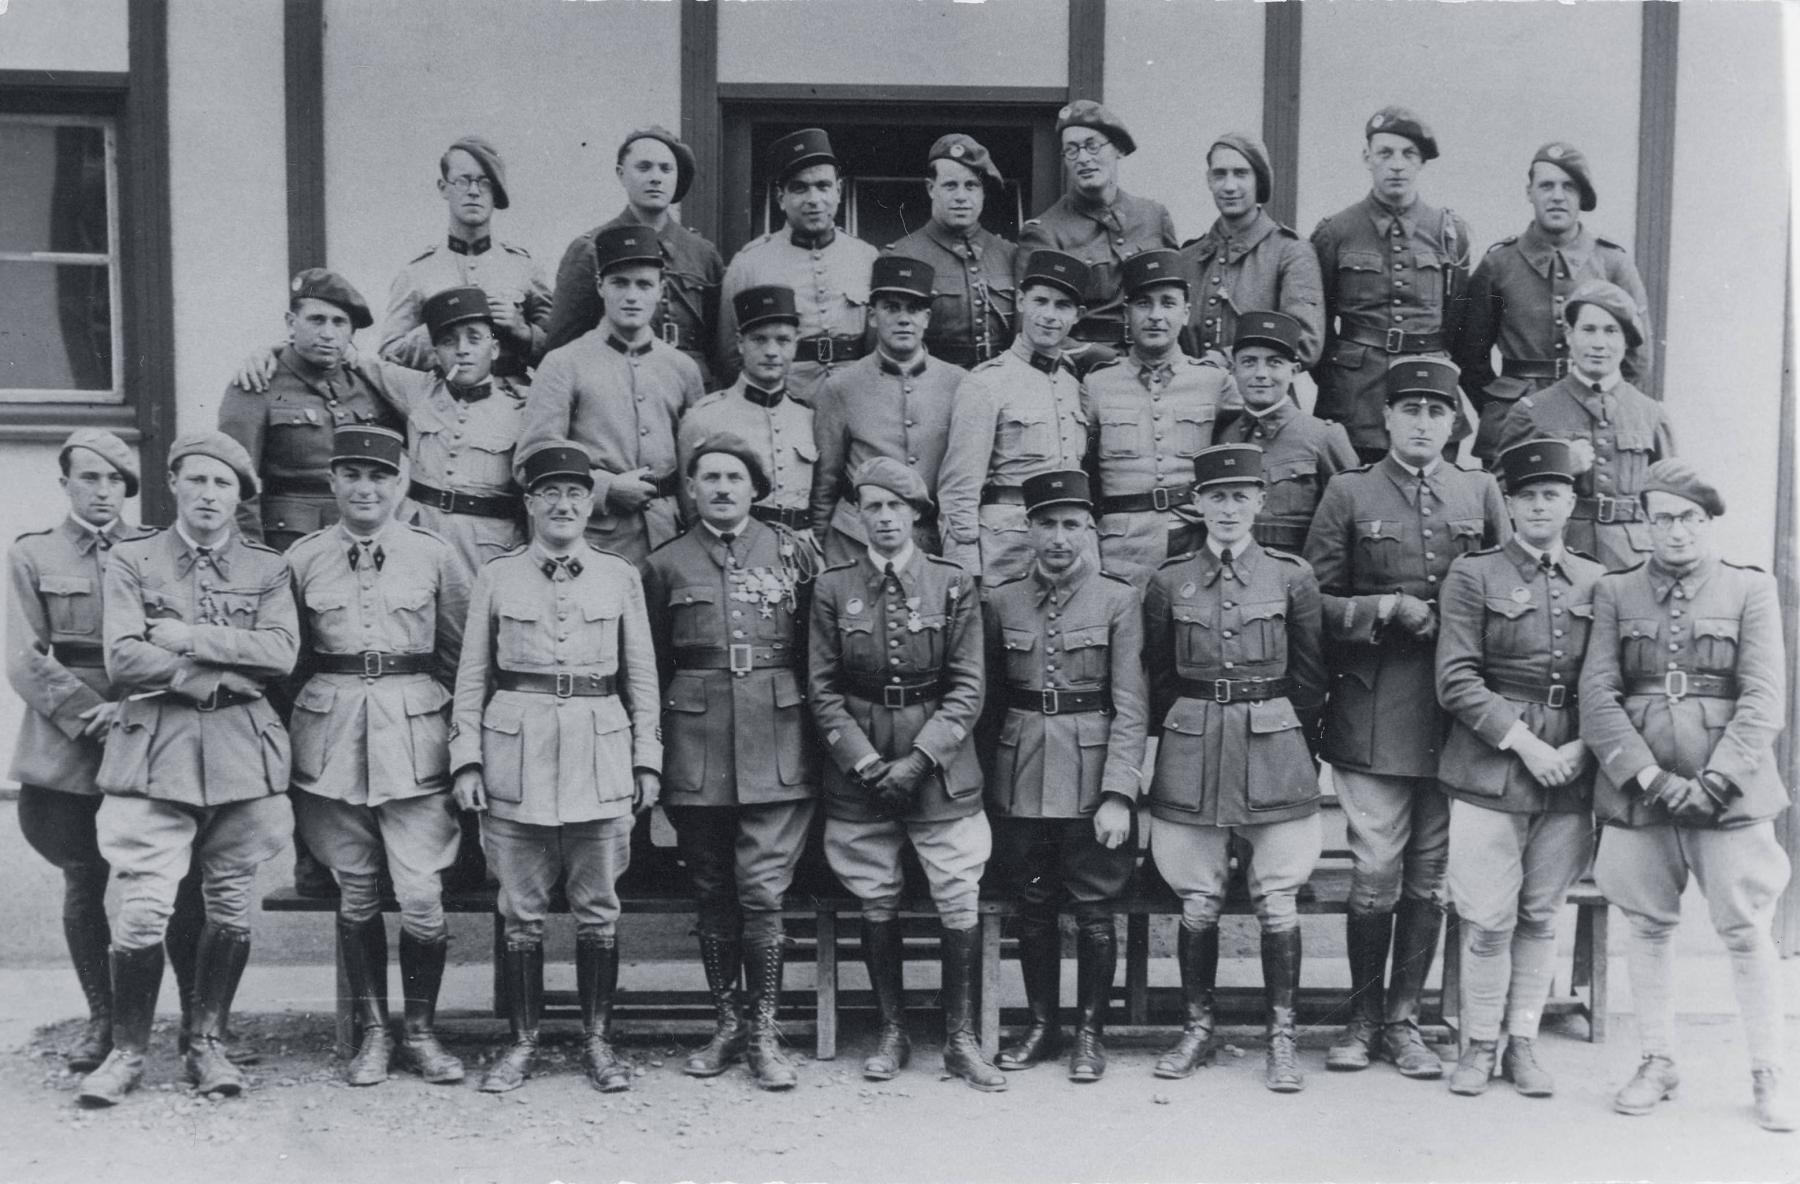 Ligne Maginot - 153° Régiment d'Infanterie de Forteresse (153° RIF) - Photo d'état major de bataillon
A priori 153° RIF au vu des képis et de la forme de l'insigne